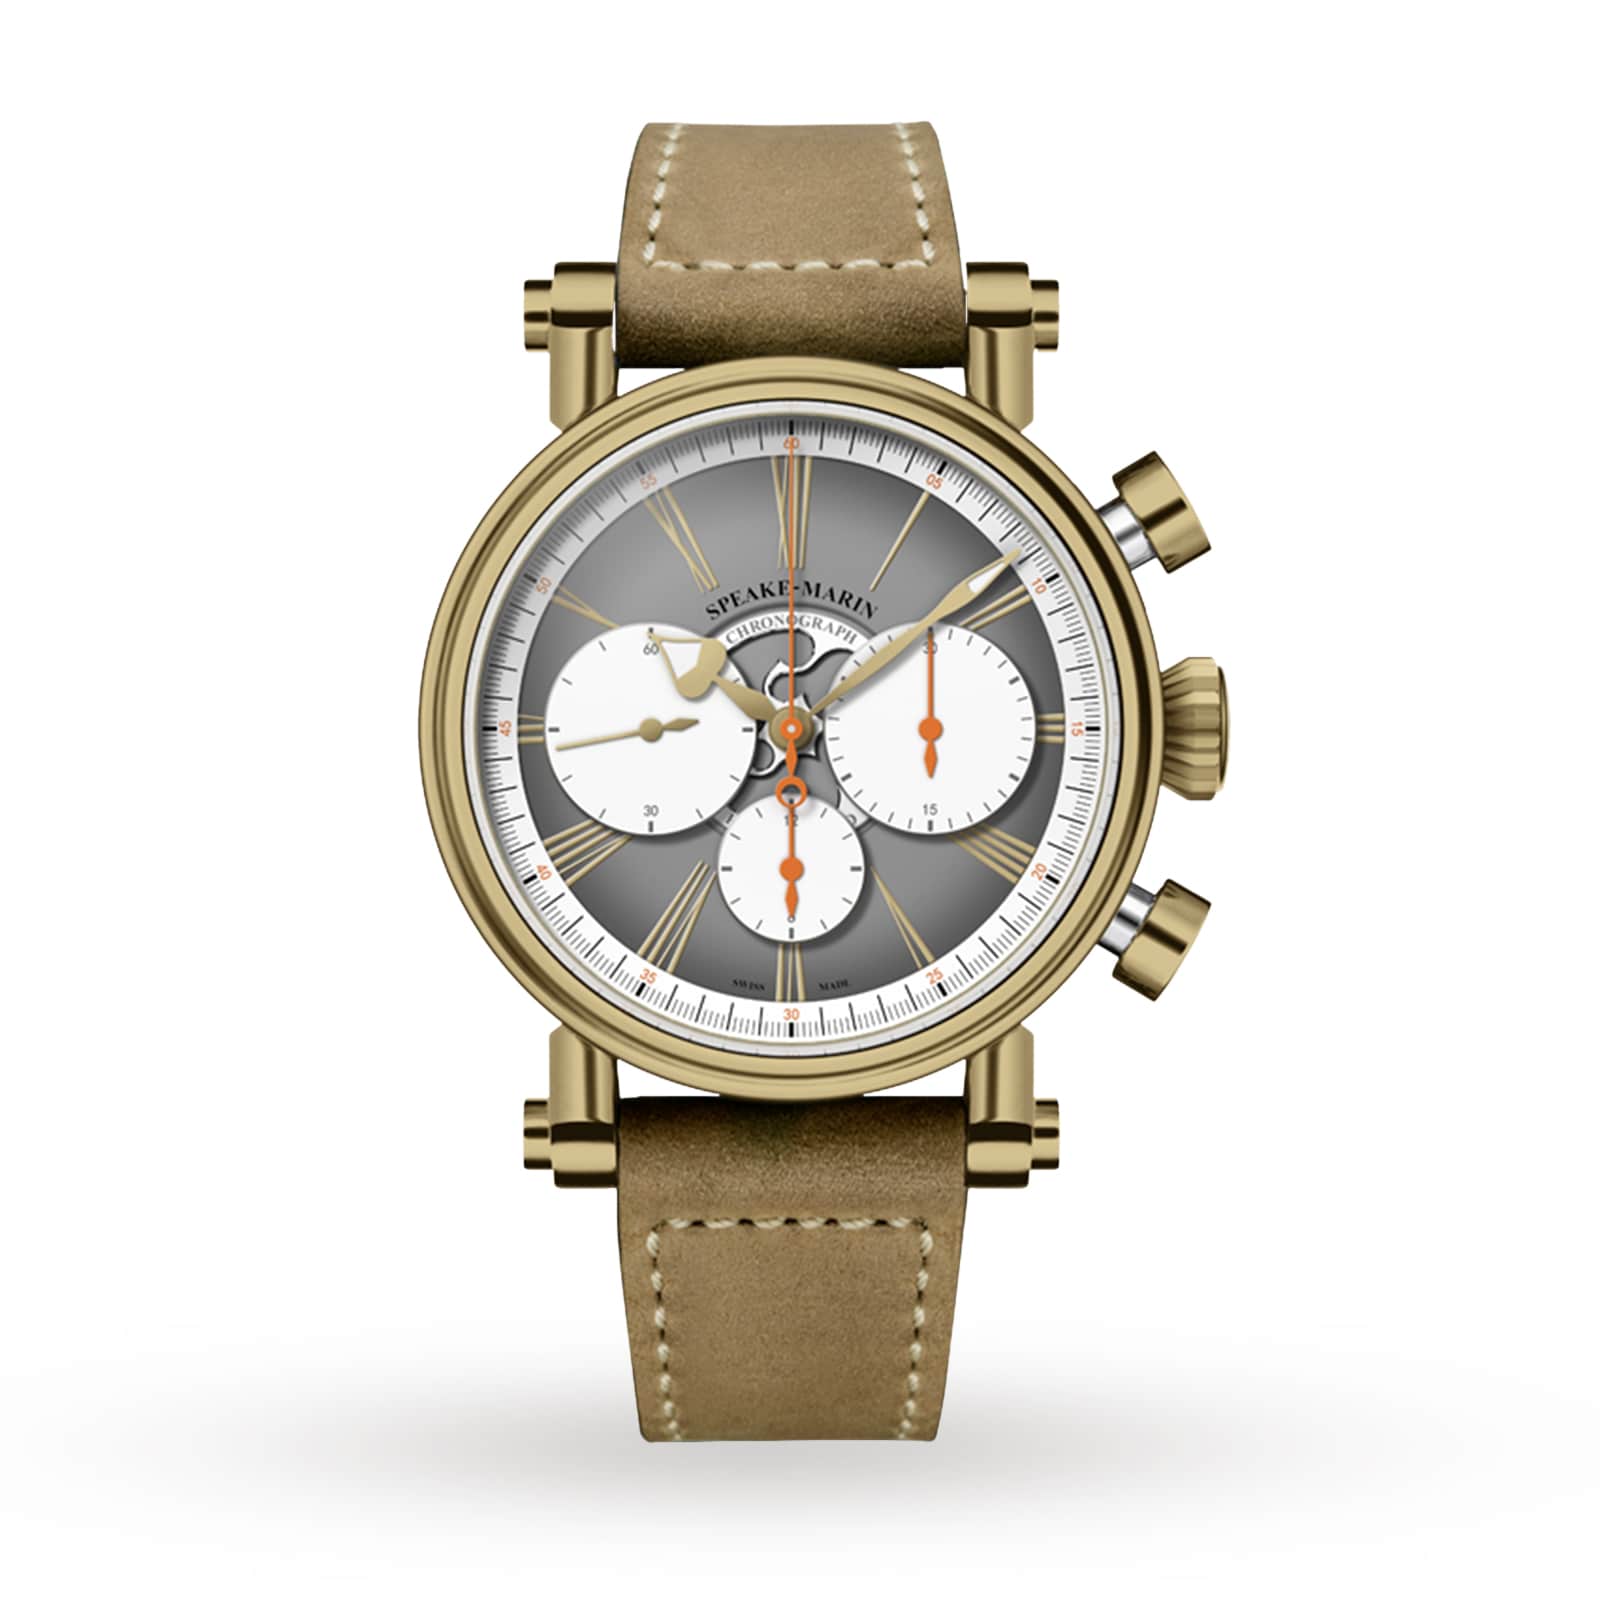 594208060 Speake-Marin Of Haute Horlogerie Bronze US Watches 42mm Switzerland London Chronograph |